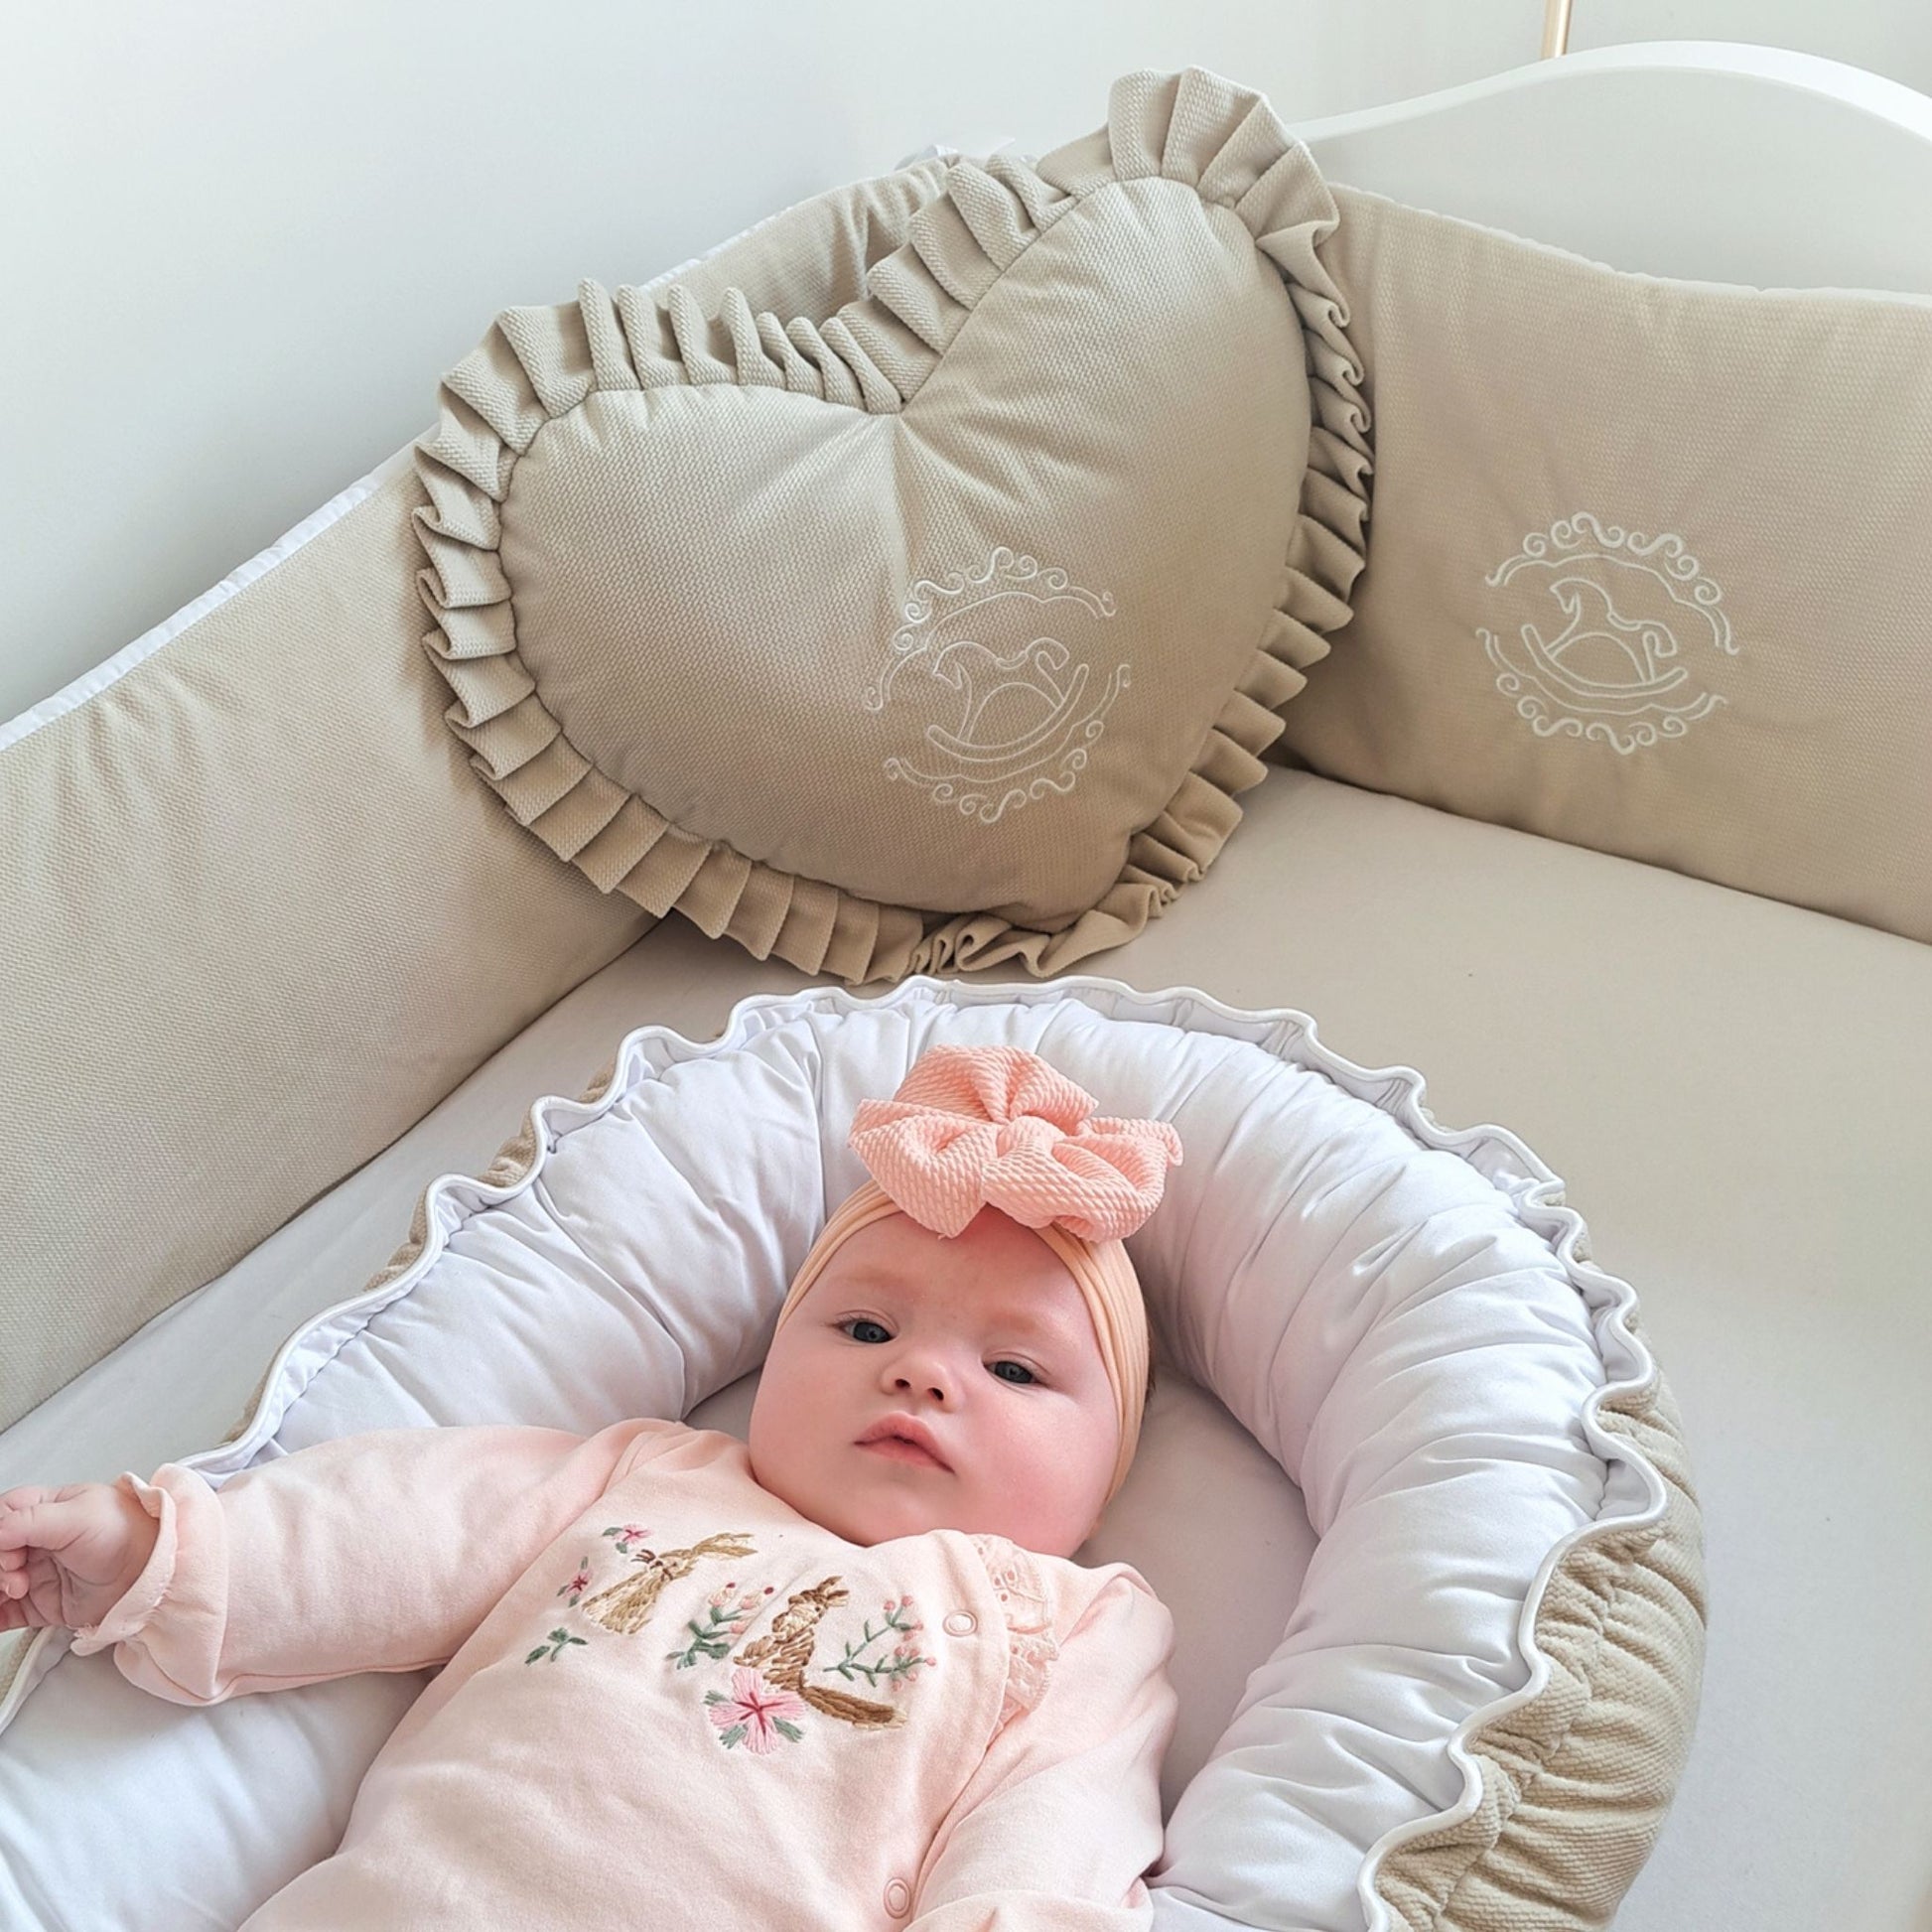 baby room decor pillow with frills velvet beige pillow